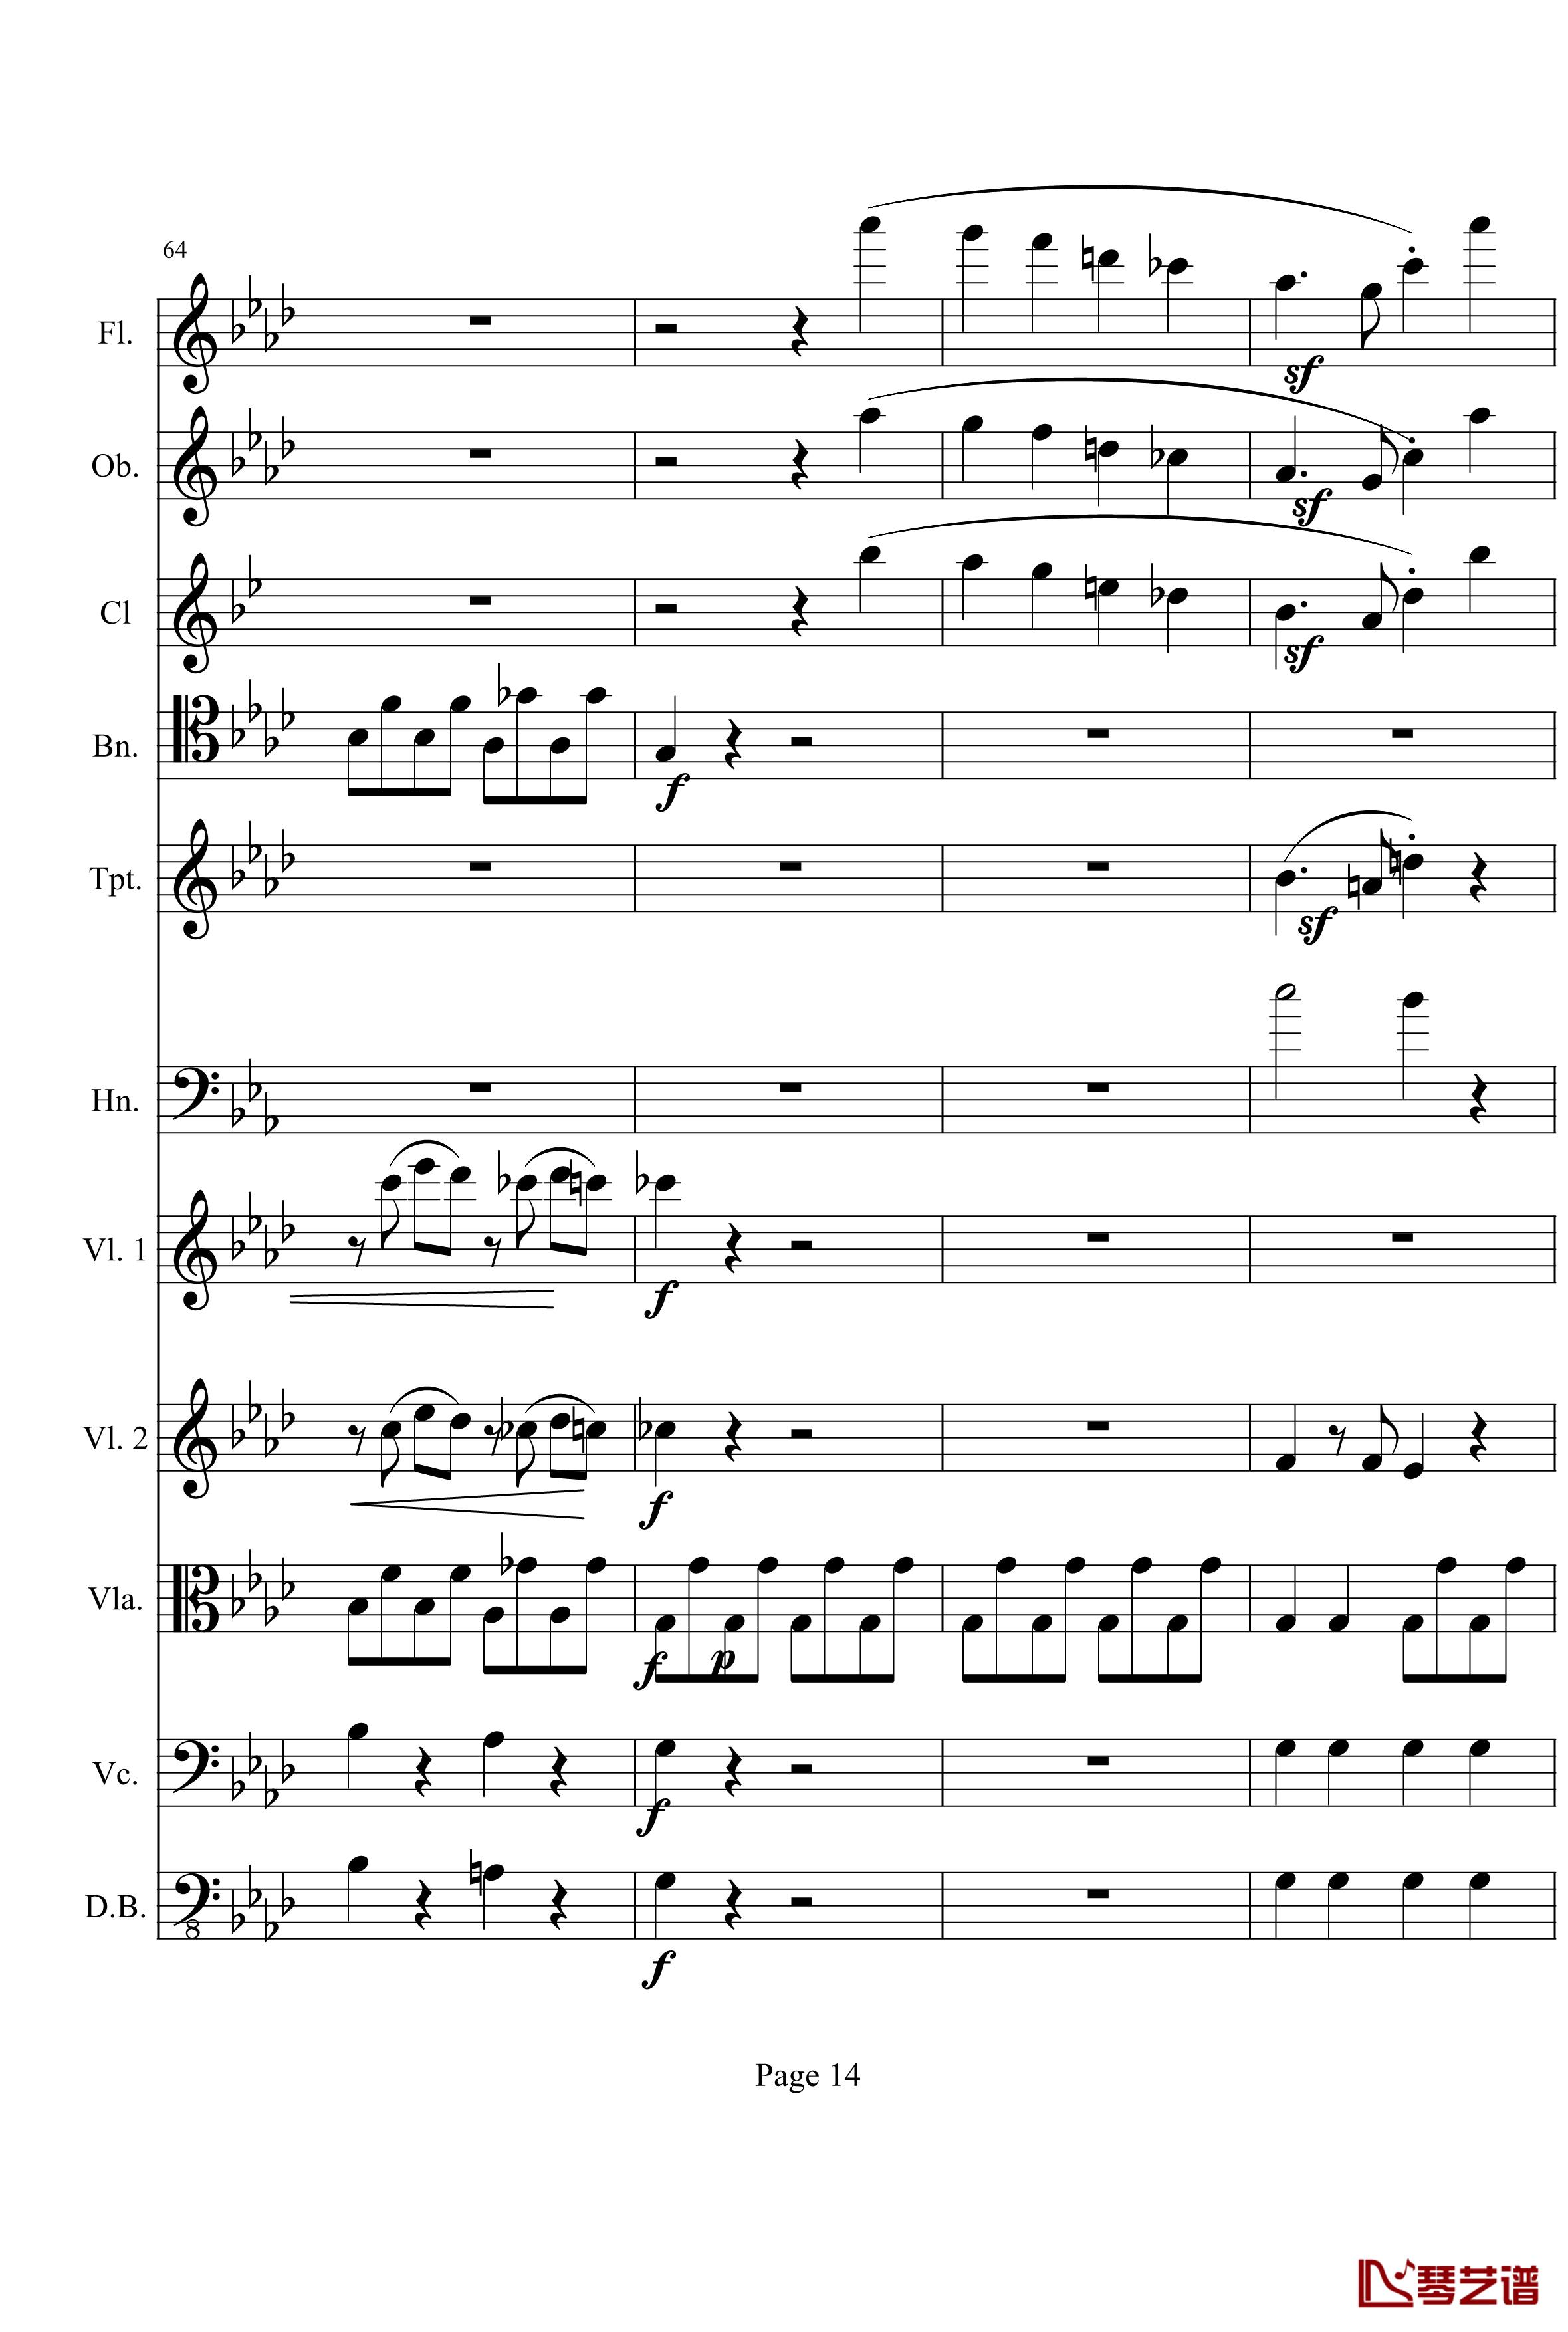 奏鸣曲之交响钢琴谱-第1首-Ⅰ-贝多芬-beethoven14